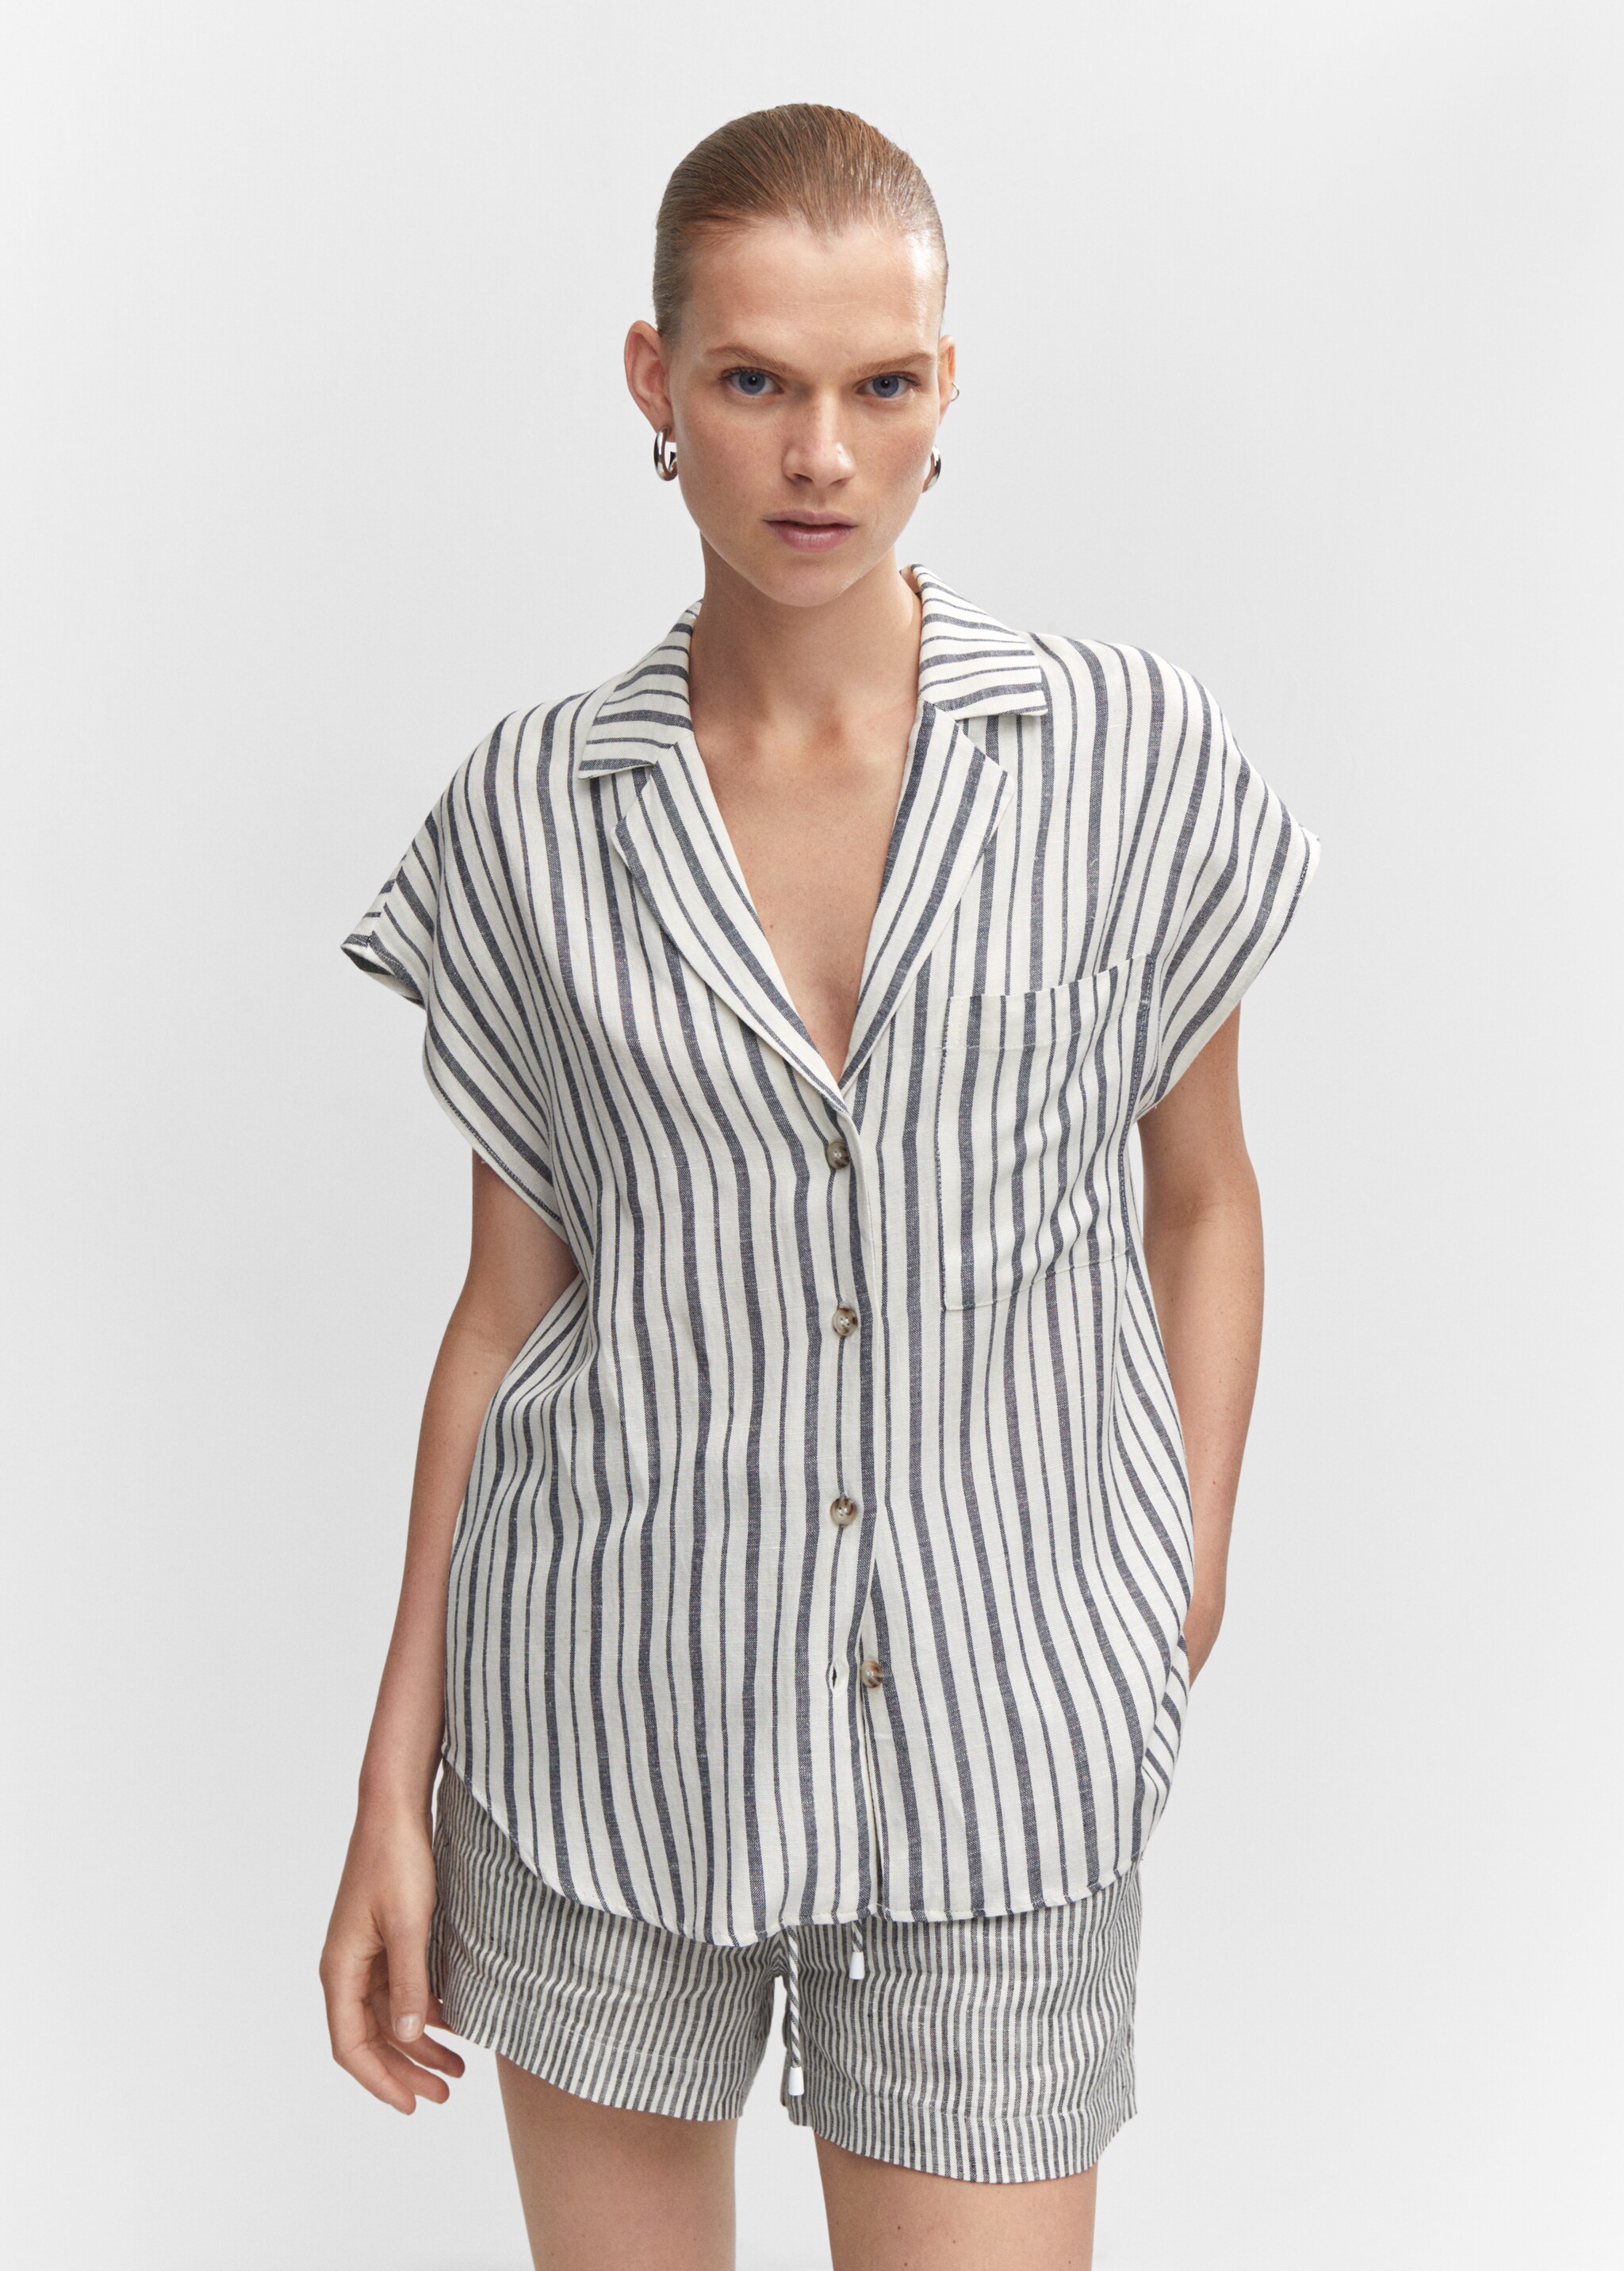 Striped linen-blend shirt - Medium plane